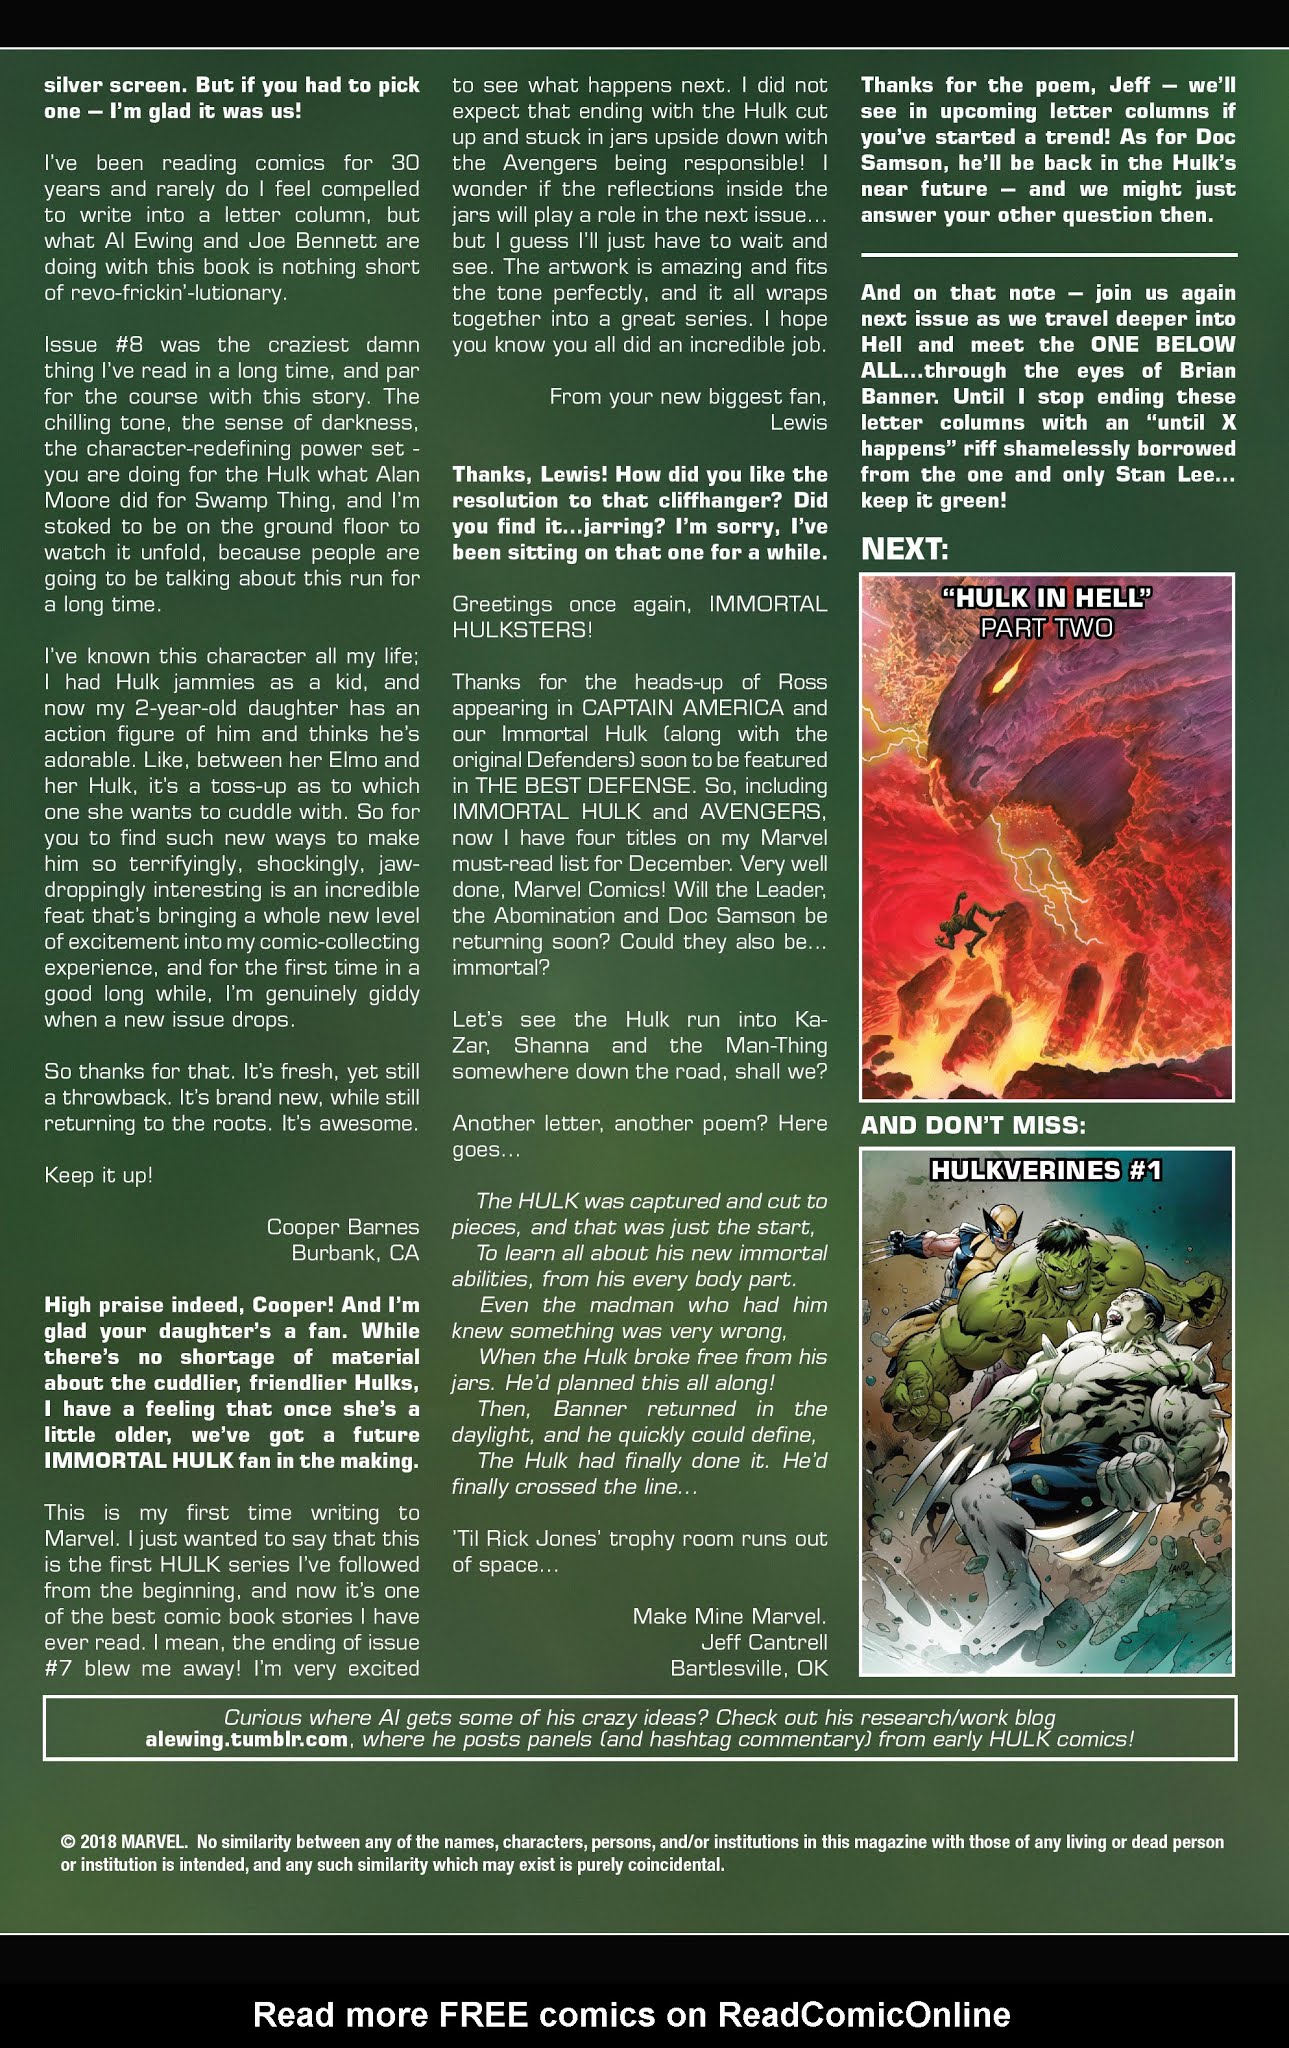 Read online Immortal Hulk comic -  Issue #11 - 24